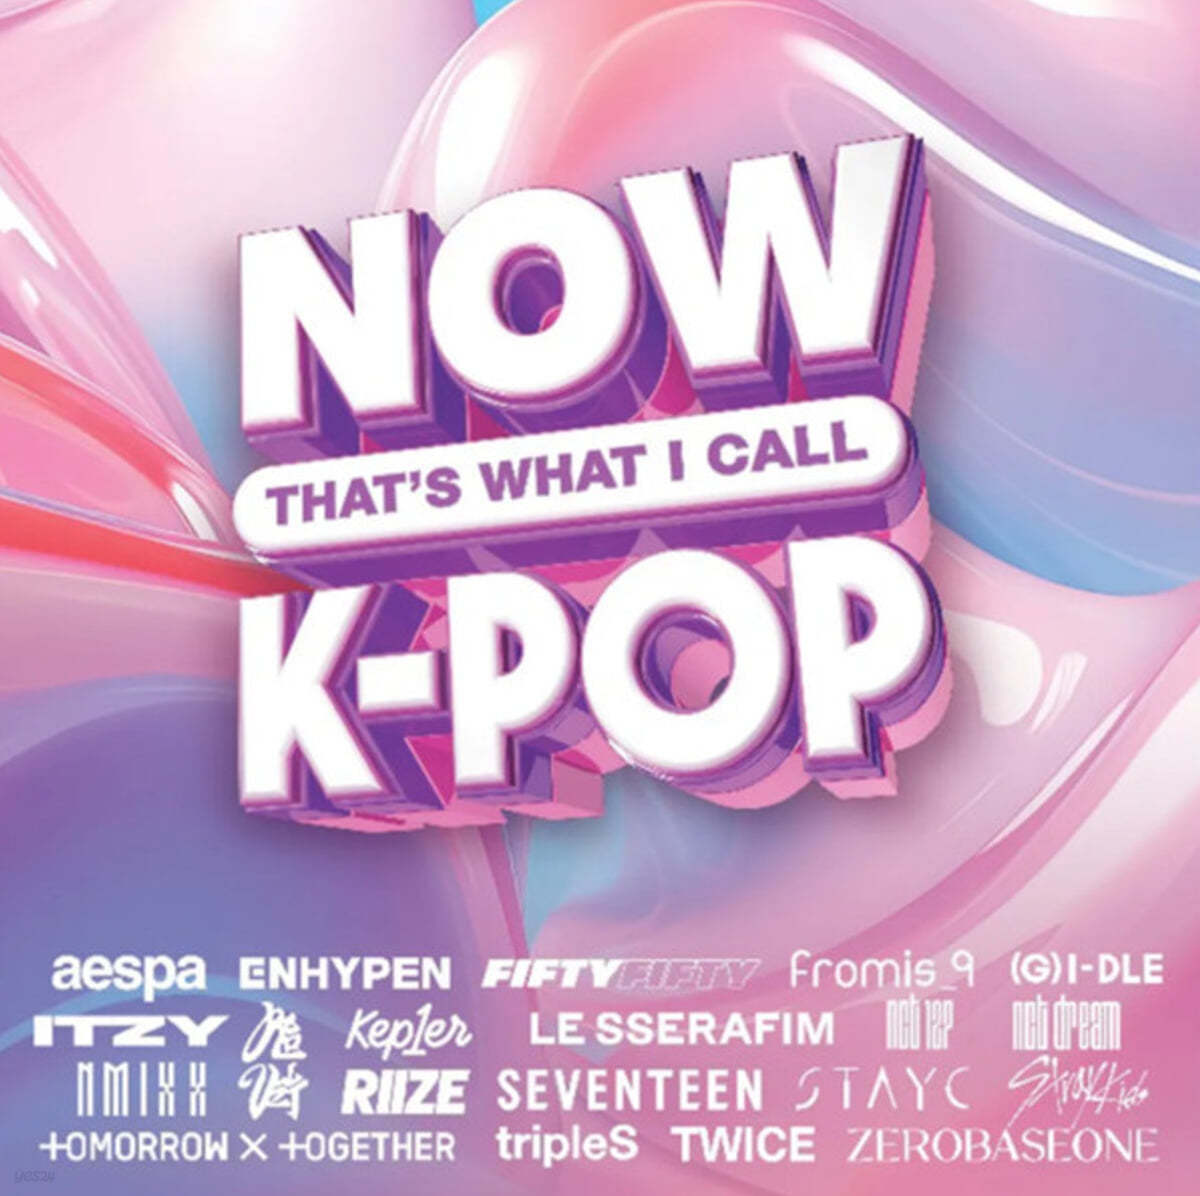 케이팝 모음집 (Now That’s What I Call K-Pop) [LP]